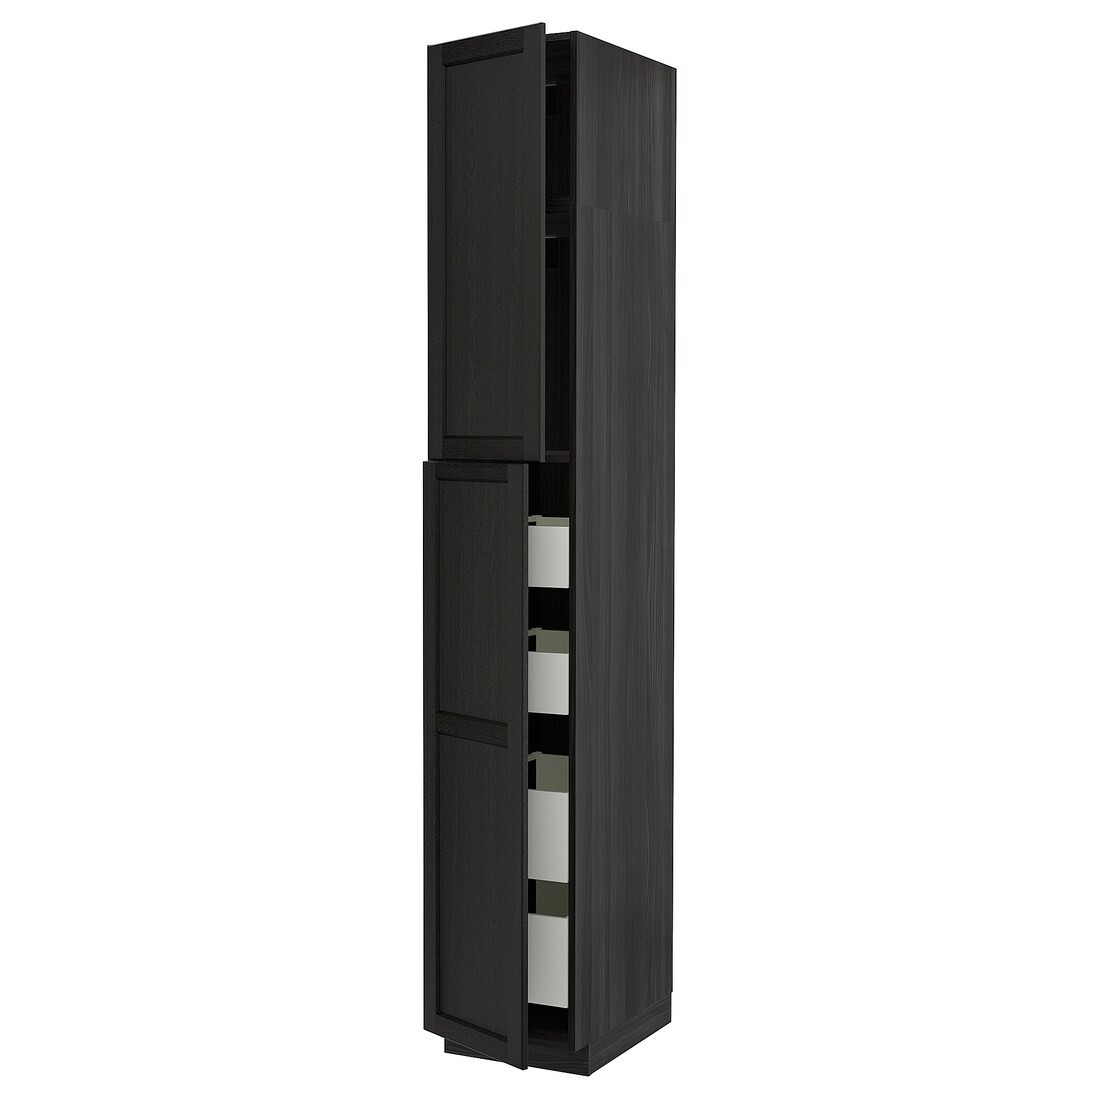 IKEA METOD МЕТОД / MAXIMERA МАКСИМЕРА Шкаф высокий 2 двери / 4 ящика, черный / Lerhyttan черная морилка, 40x60x240 см 69460202 694.602.02